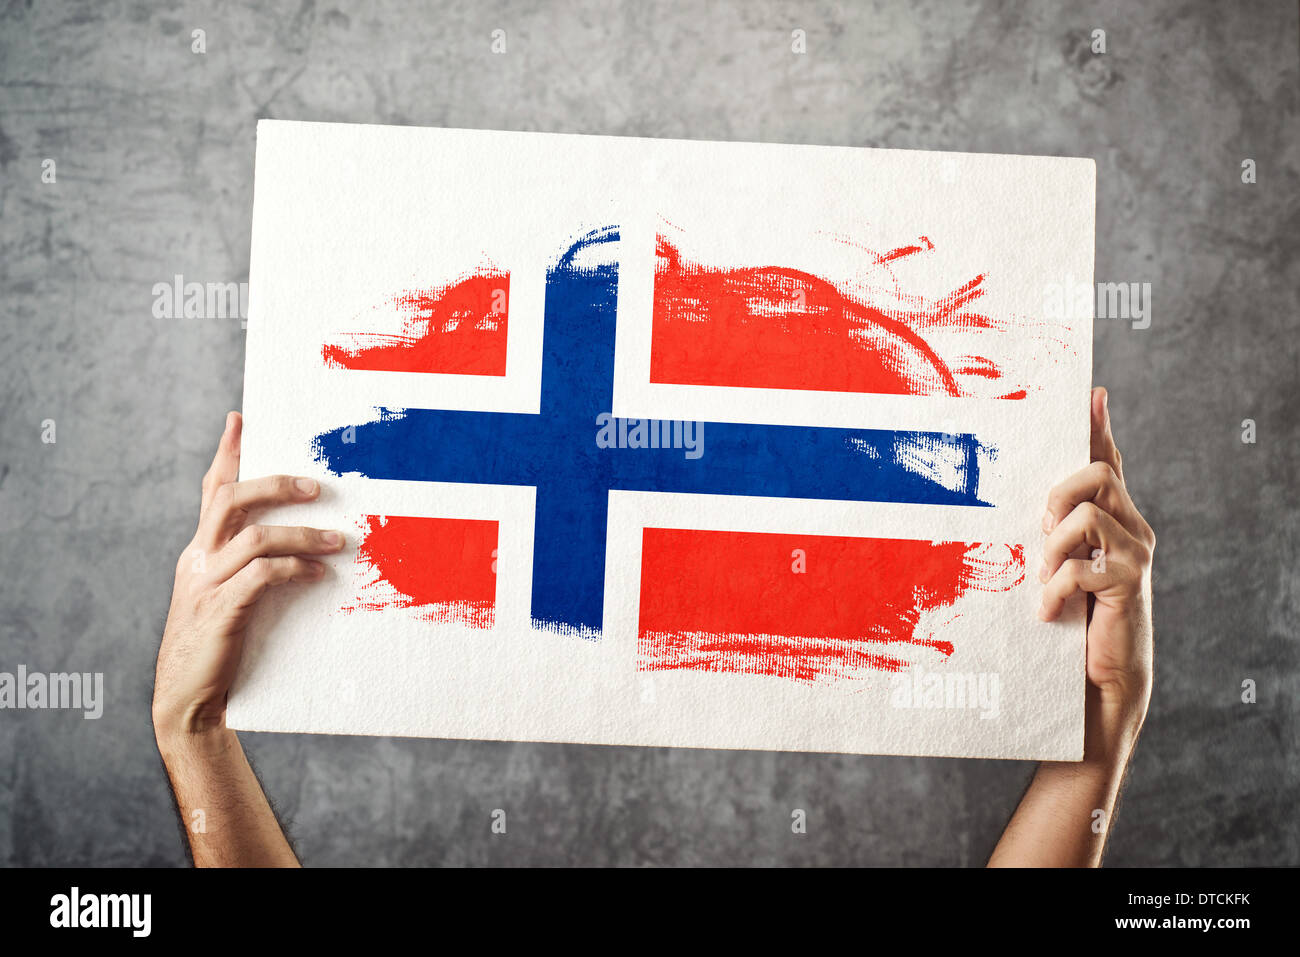 Norwegen-Flagge. Mann, der Banner mit norwegischer Flagge hält. Nationalmannschaft, Patriotismus Konzept zu unterstützen. Stockfoto